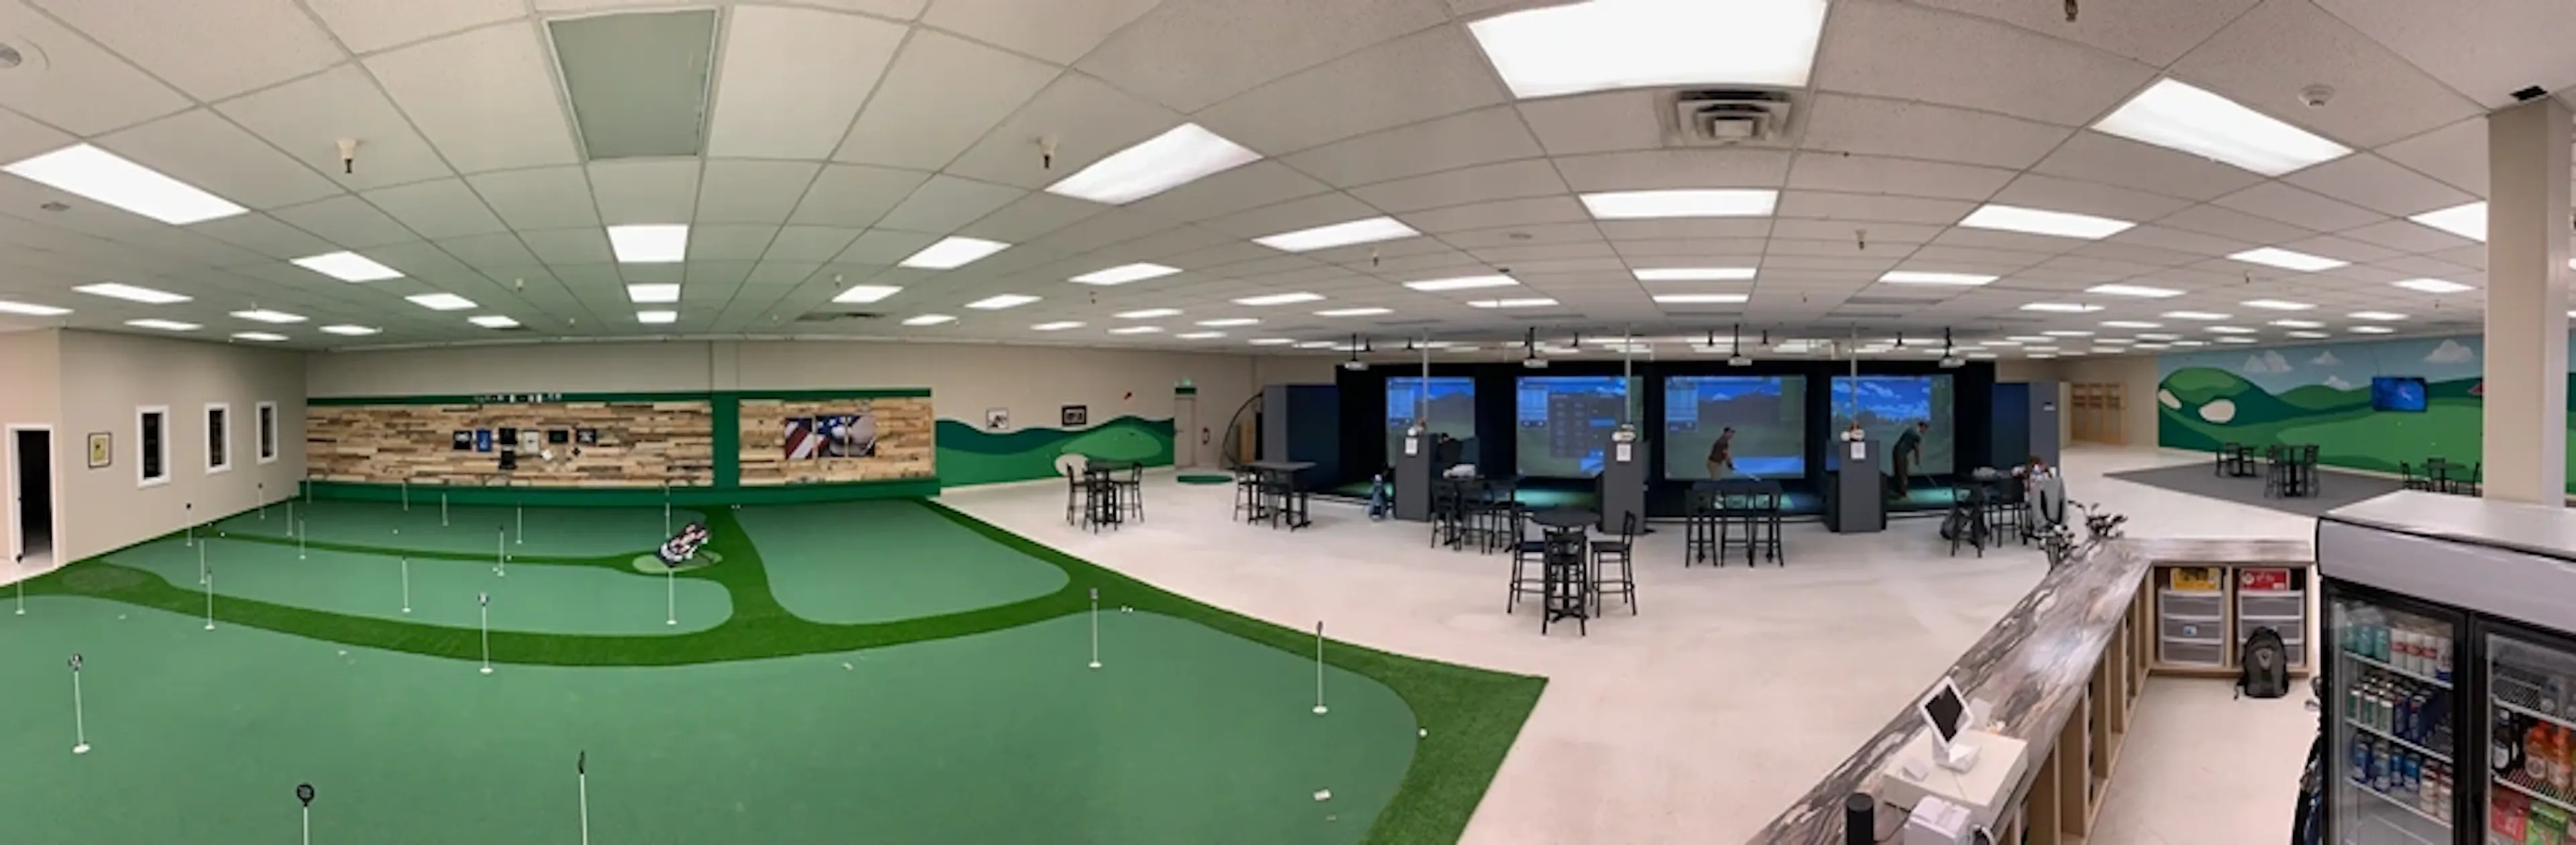 bobs indoor golf